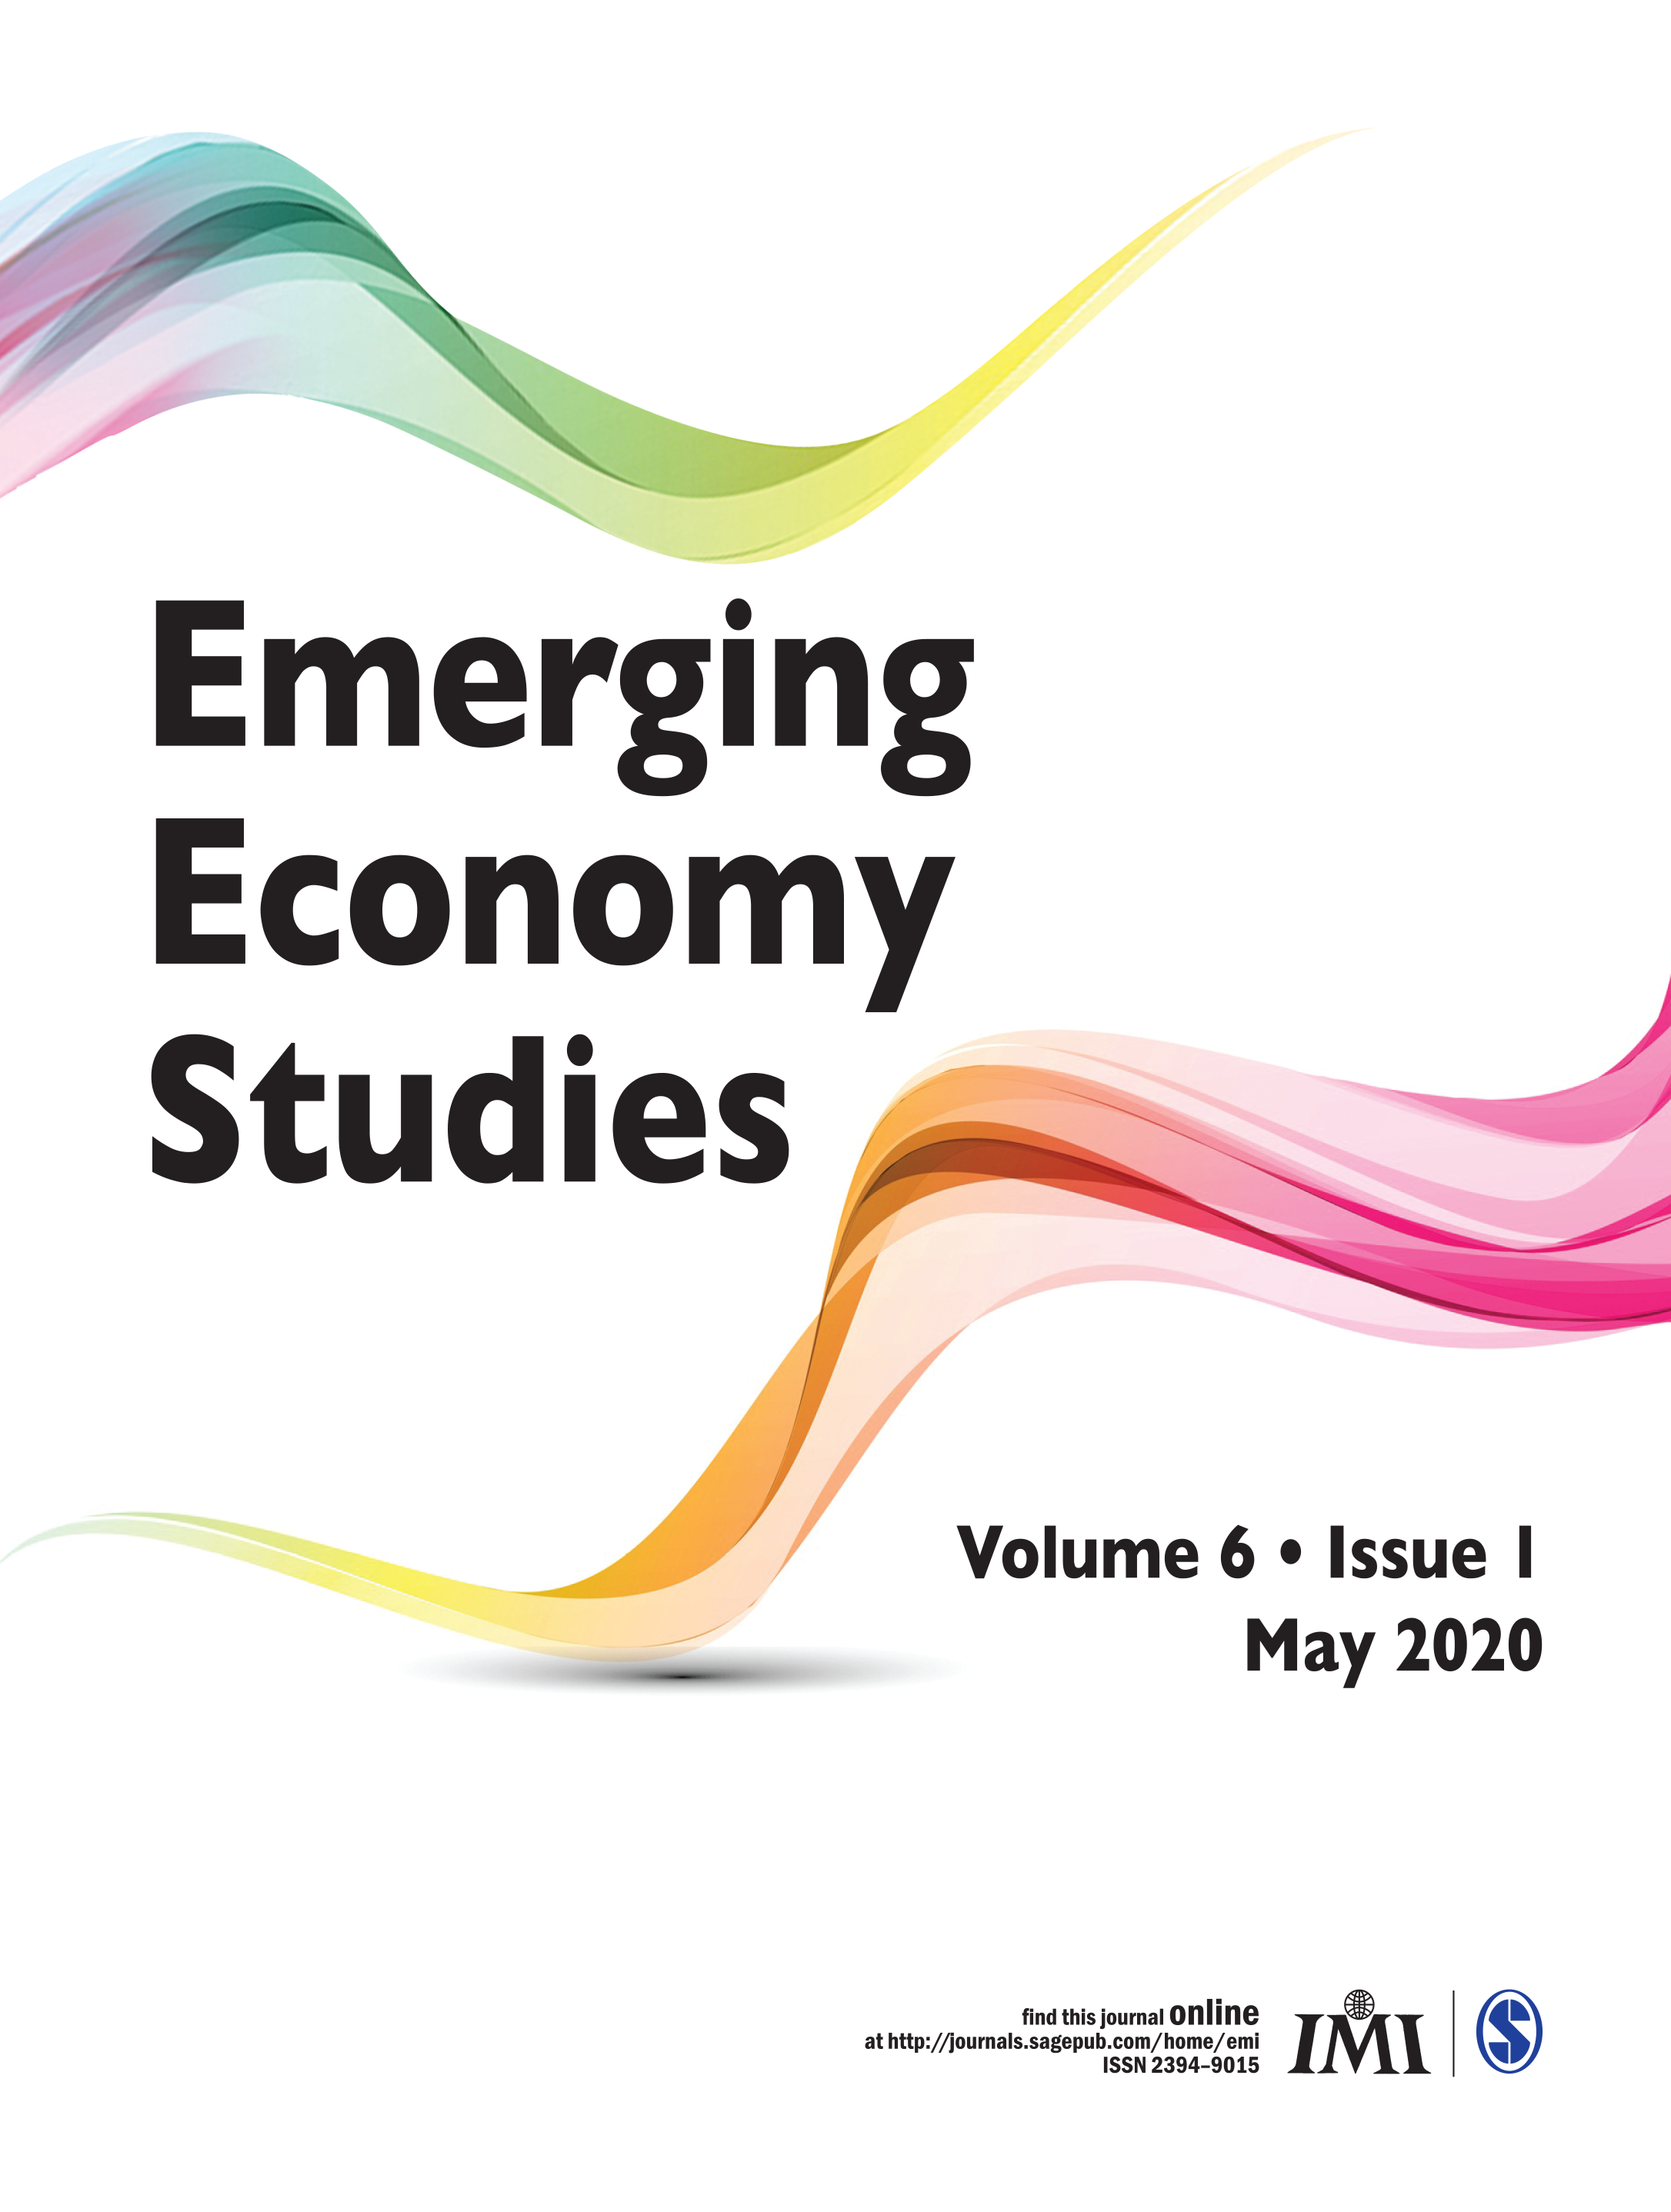 Emerging Economy Studies